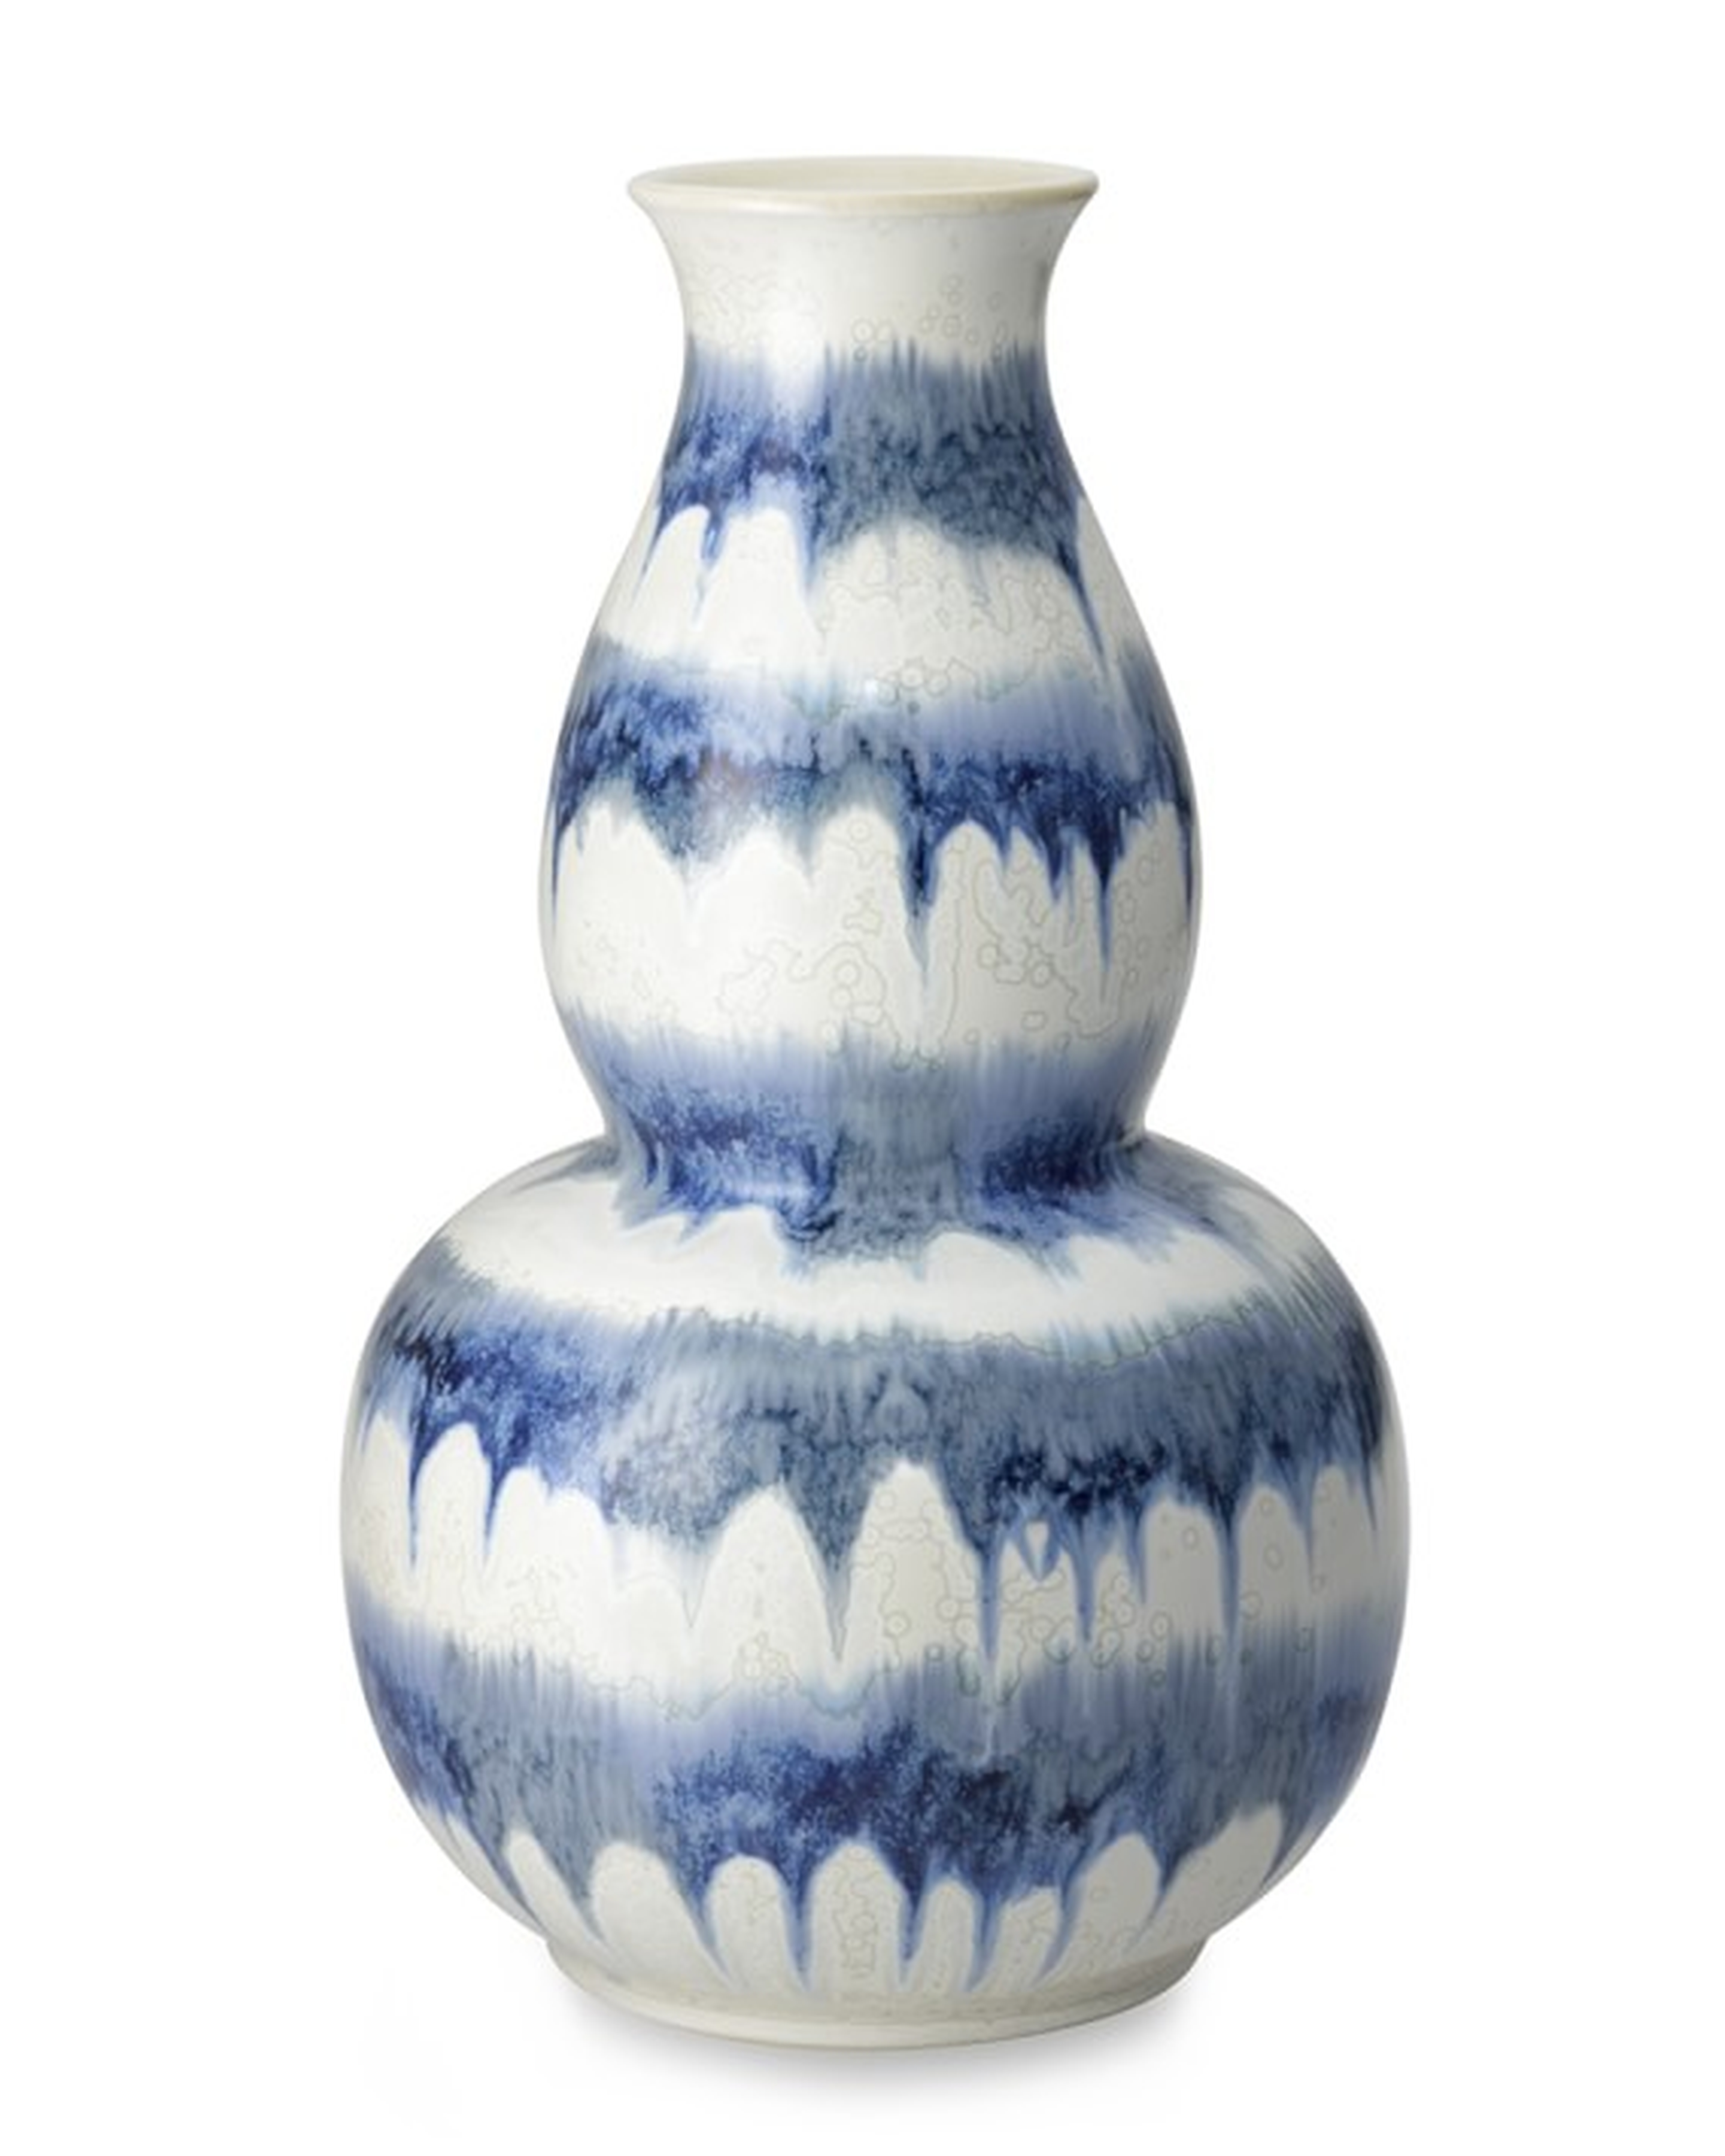 Ceramic Drip Vase - Large - Williams Sonoma Home